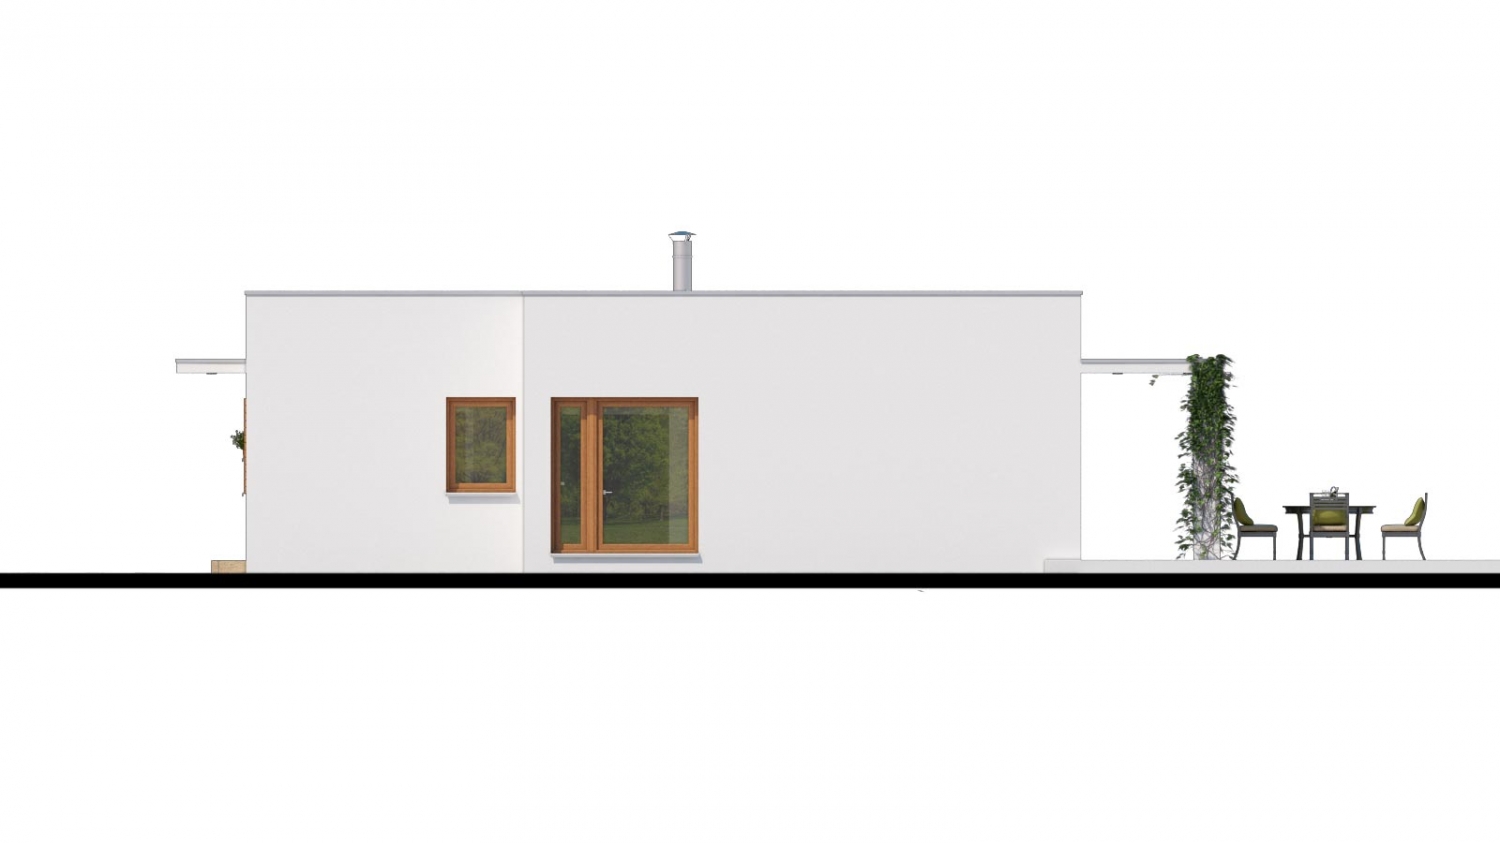 Luxusný 4 - izbový rodinný dom s plochou rovnou strechou a krytým stáním. Obytná časť je orientovaná do záhrady na terasu.